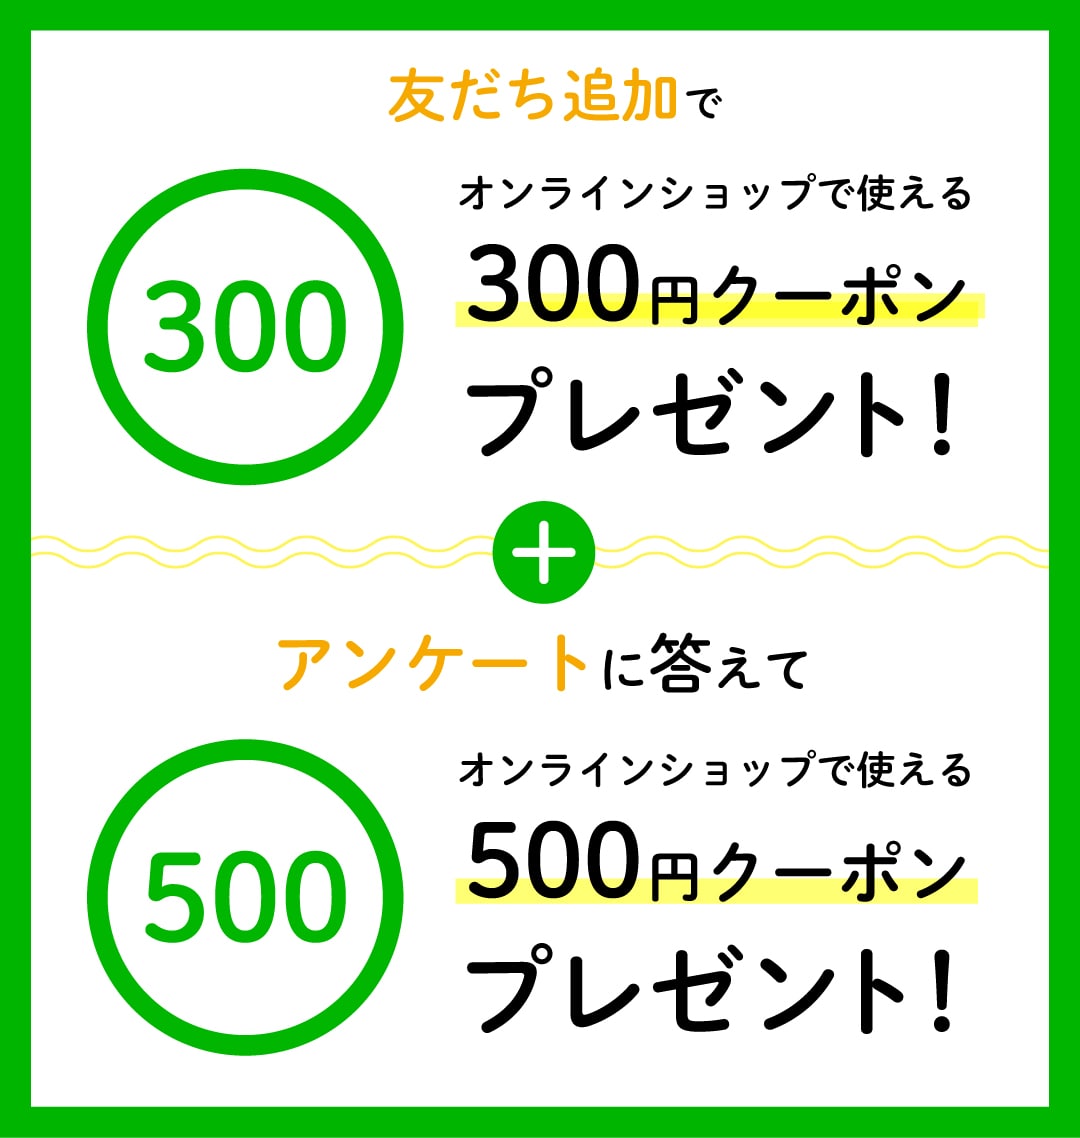 友達追加でオンラインショップで使える300円クーポンプレゼント！+アンケートに答えてオンラインショップで使える500円クーポンプレゼント！